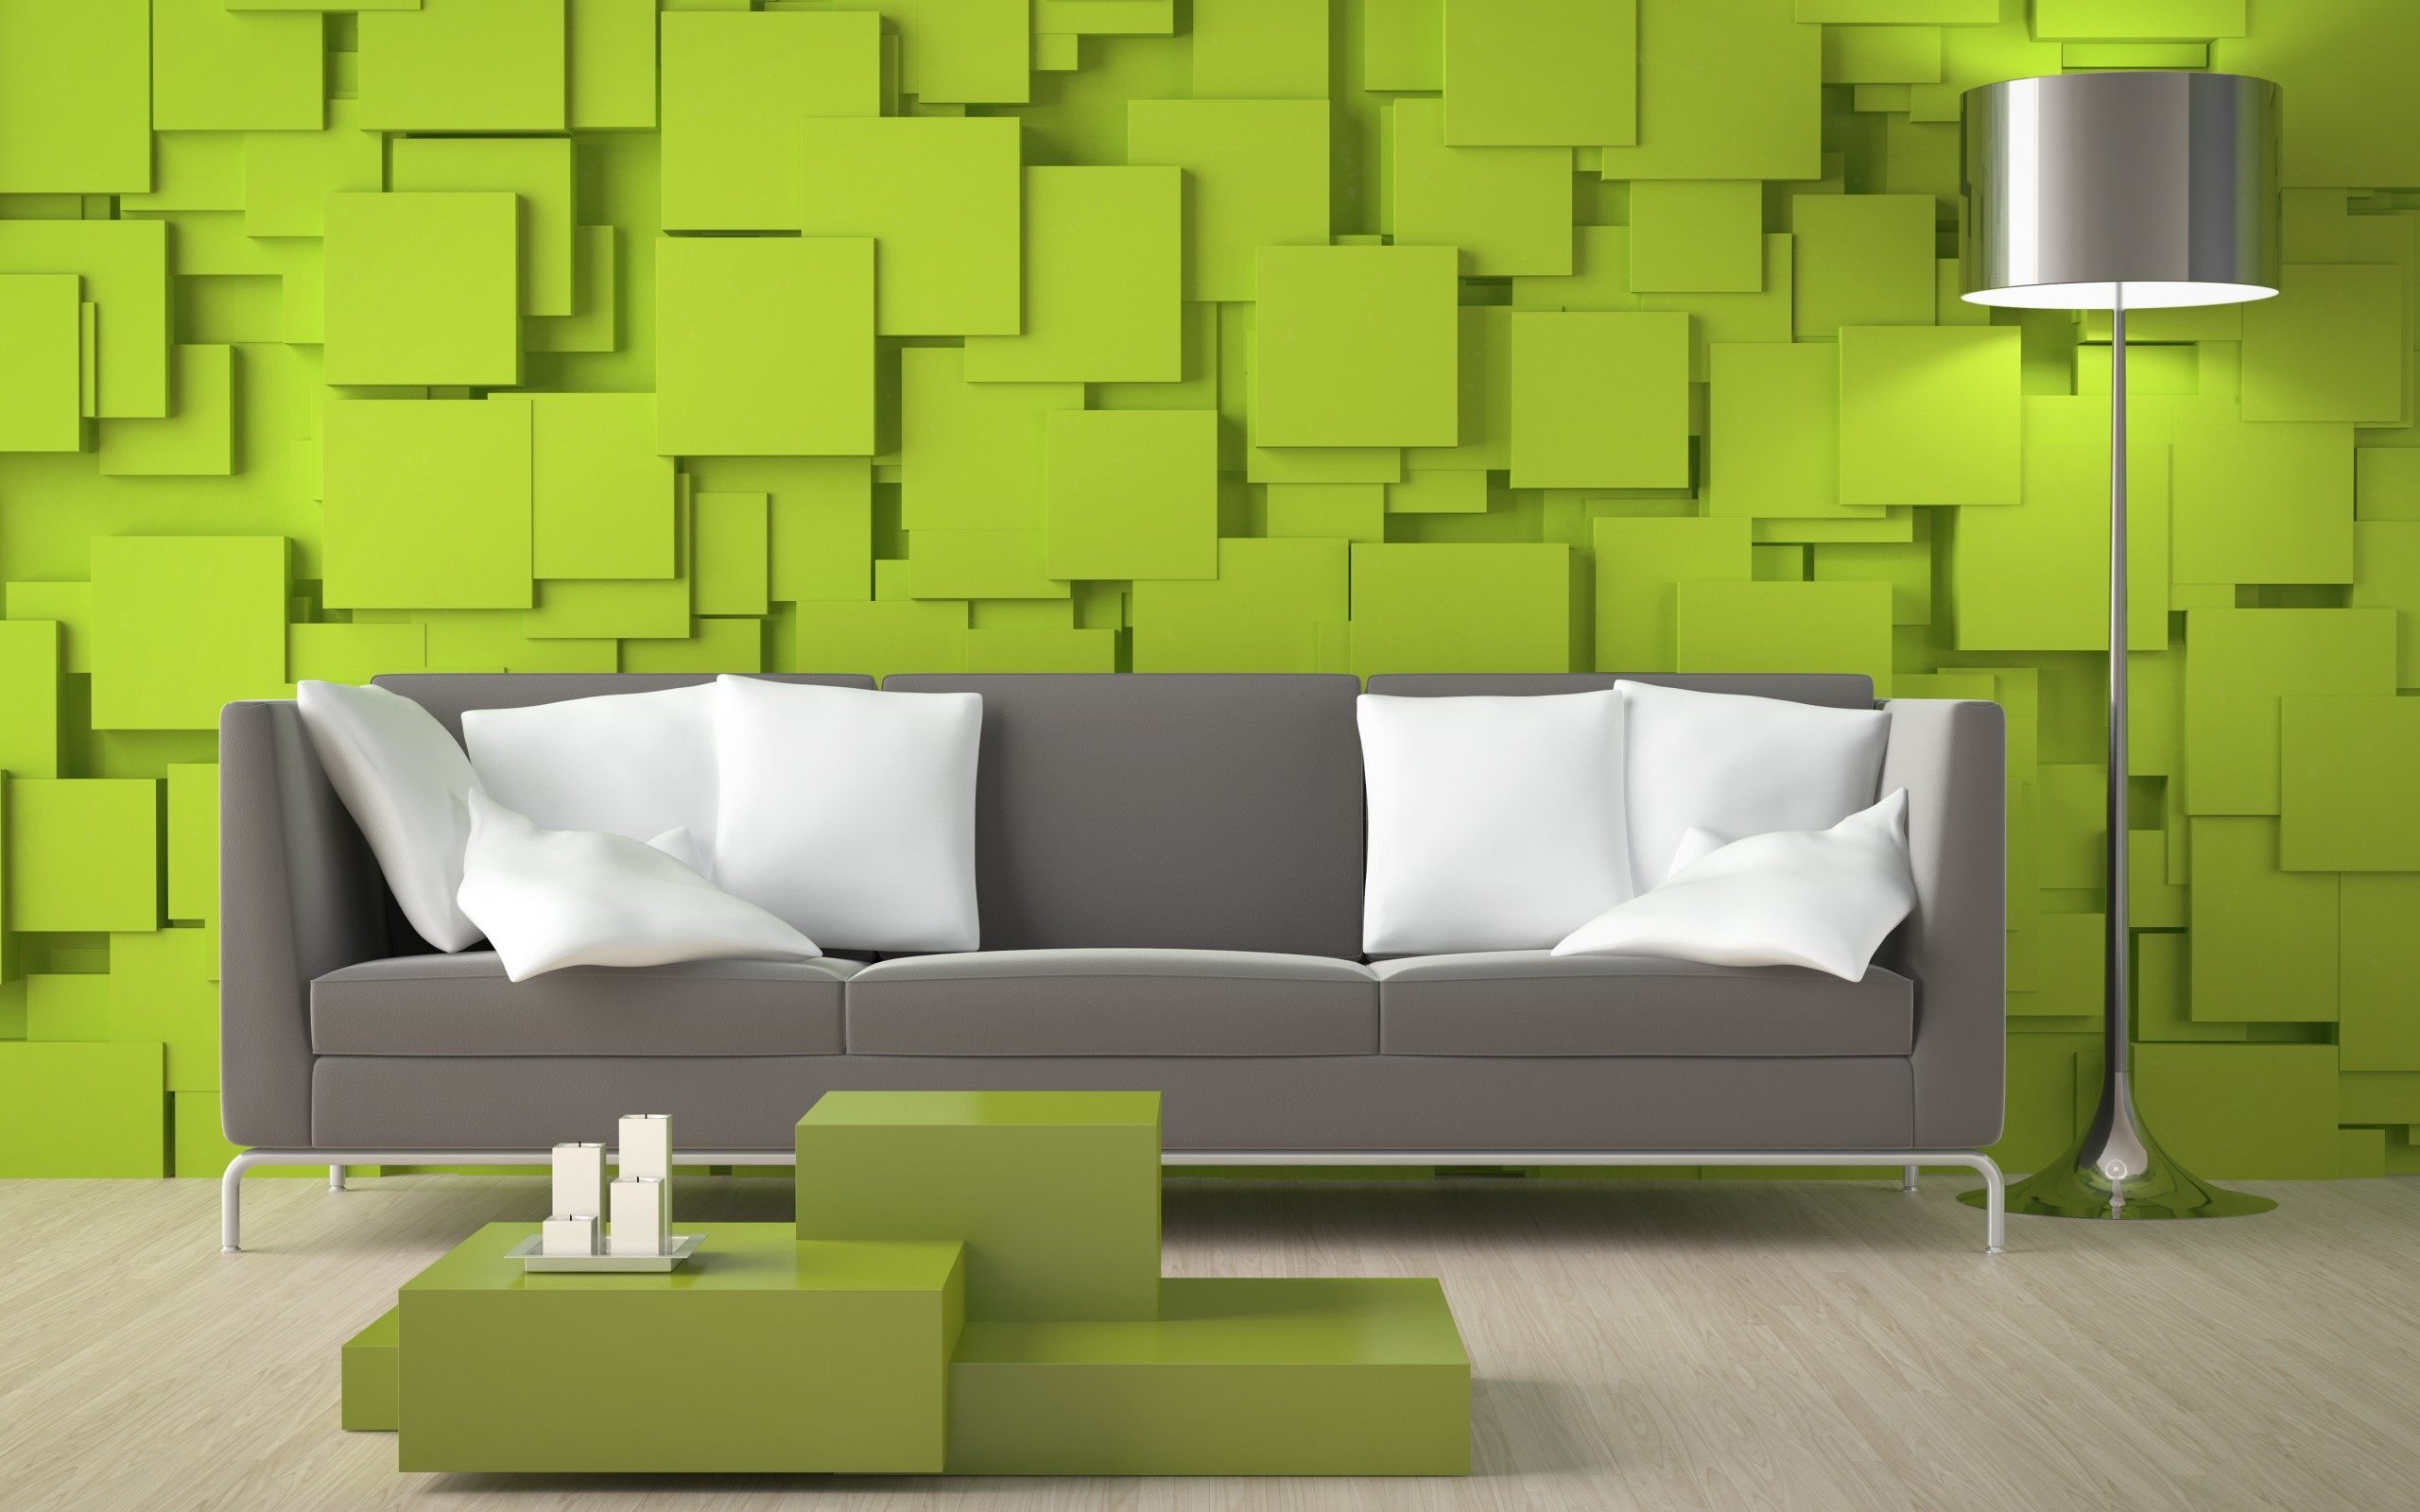 HD interior wallpapers | Peakpx